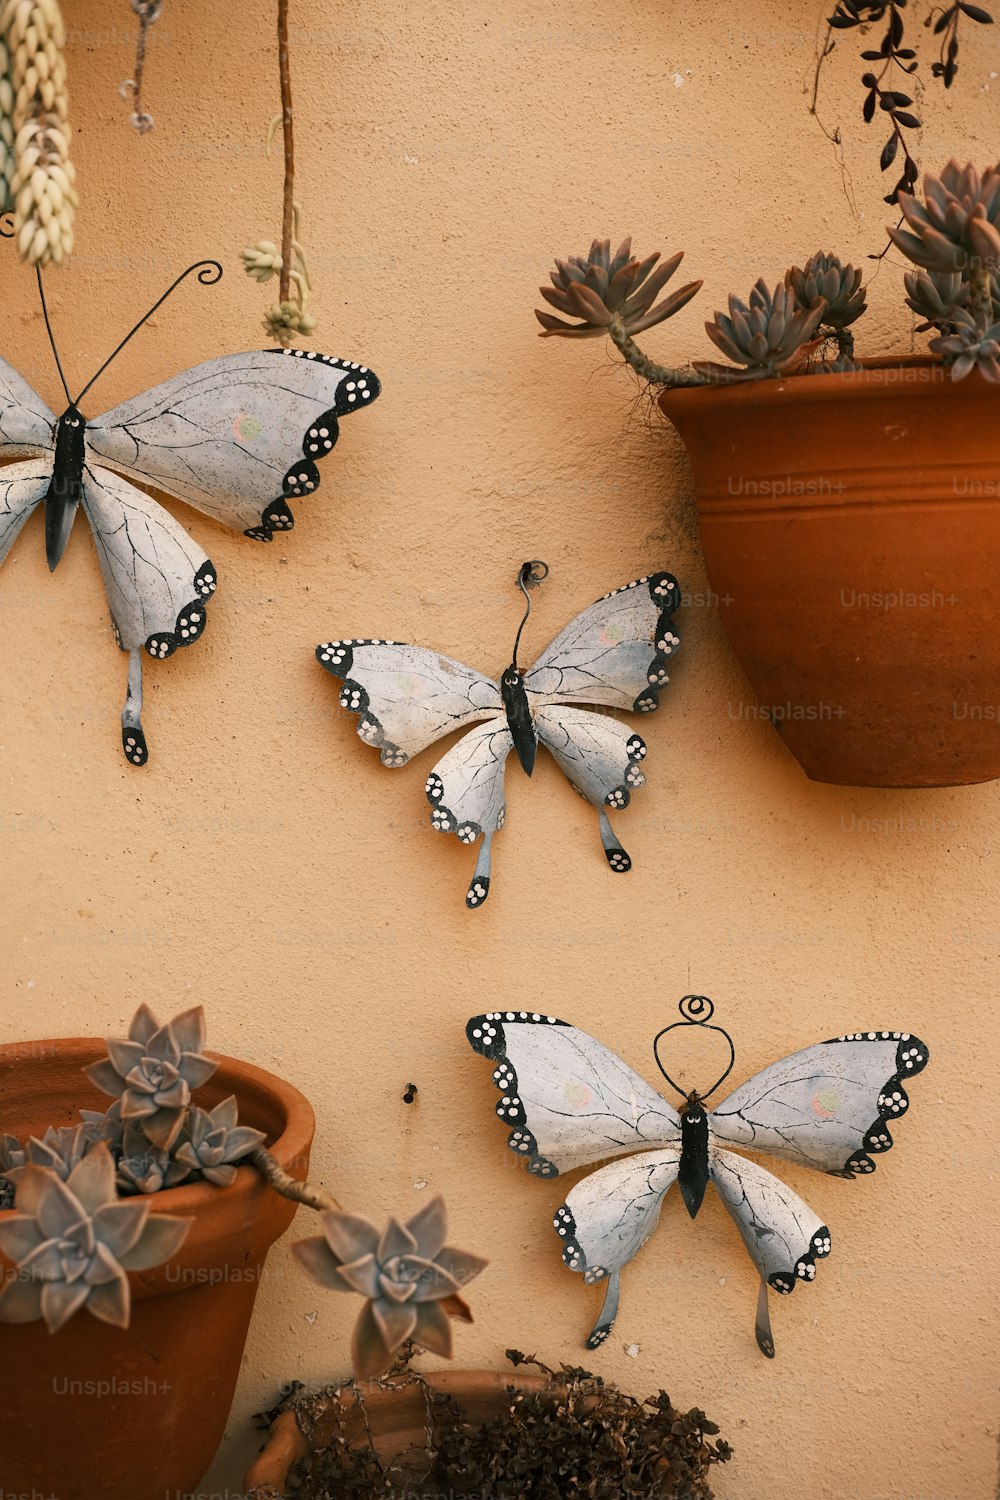 Trois papillons sont accrochés à un mur à côté d’une plante en pot